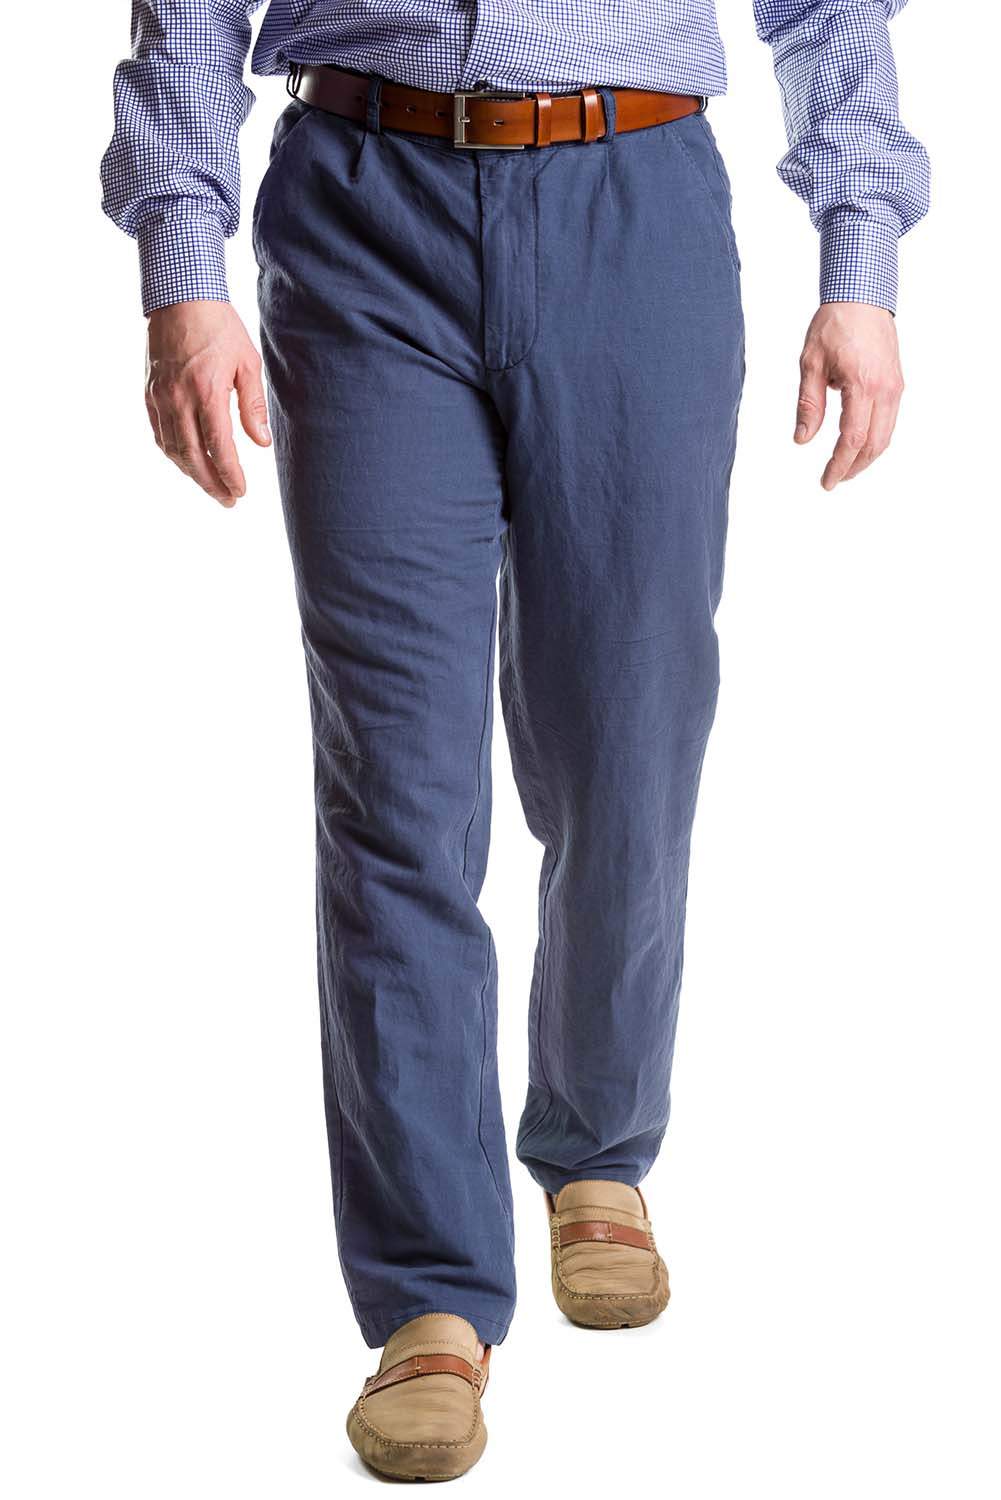 Spodnie męskie chinosy niebieskie